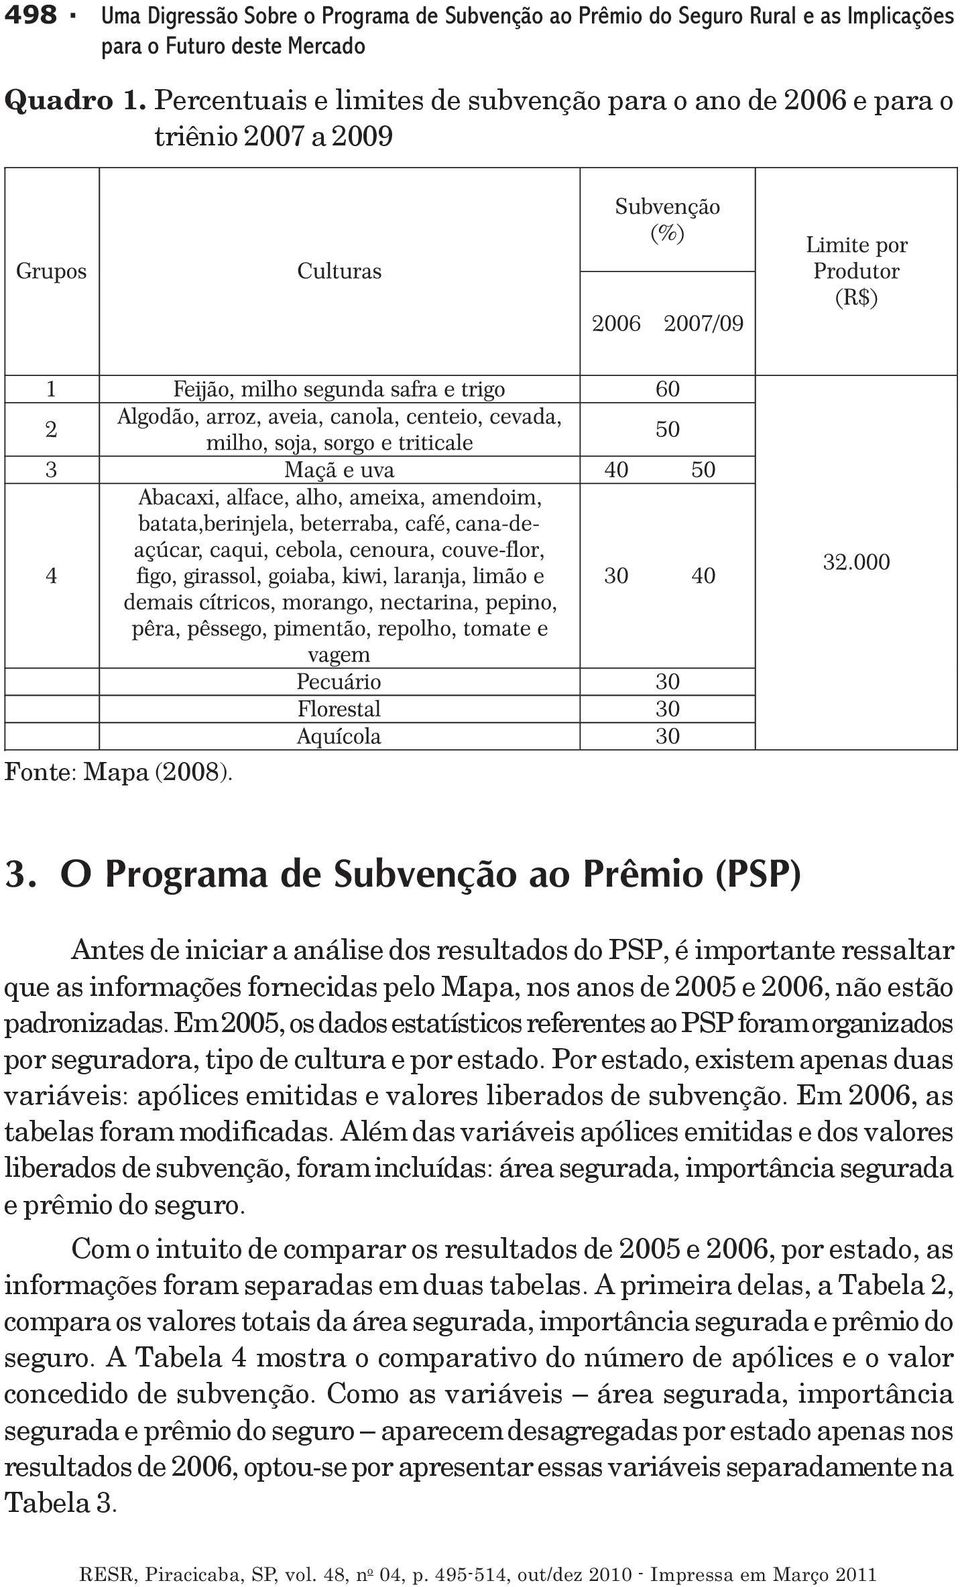 O Programa de Subvenção ao Prêmio (PSP) Antes de iniciar a análise dos resultados do PSP, é importante ressaltar que as informações fornecidas pelo Mapa, nos anos de 2005 e 2006, não estão